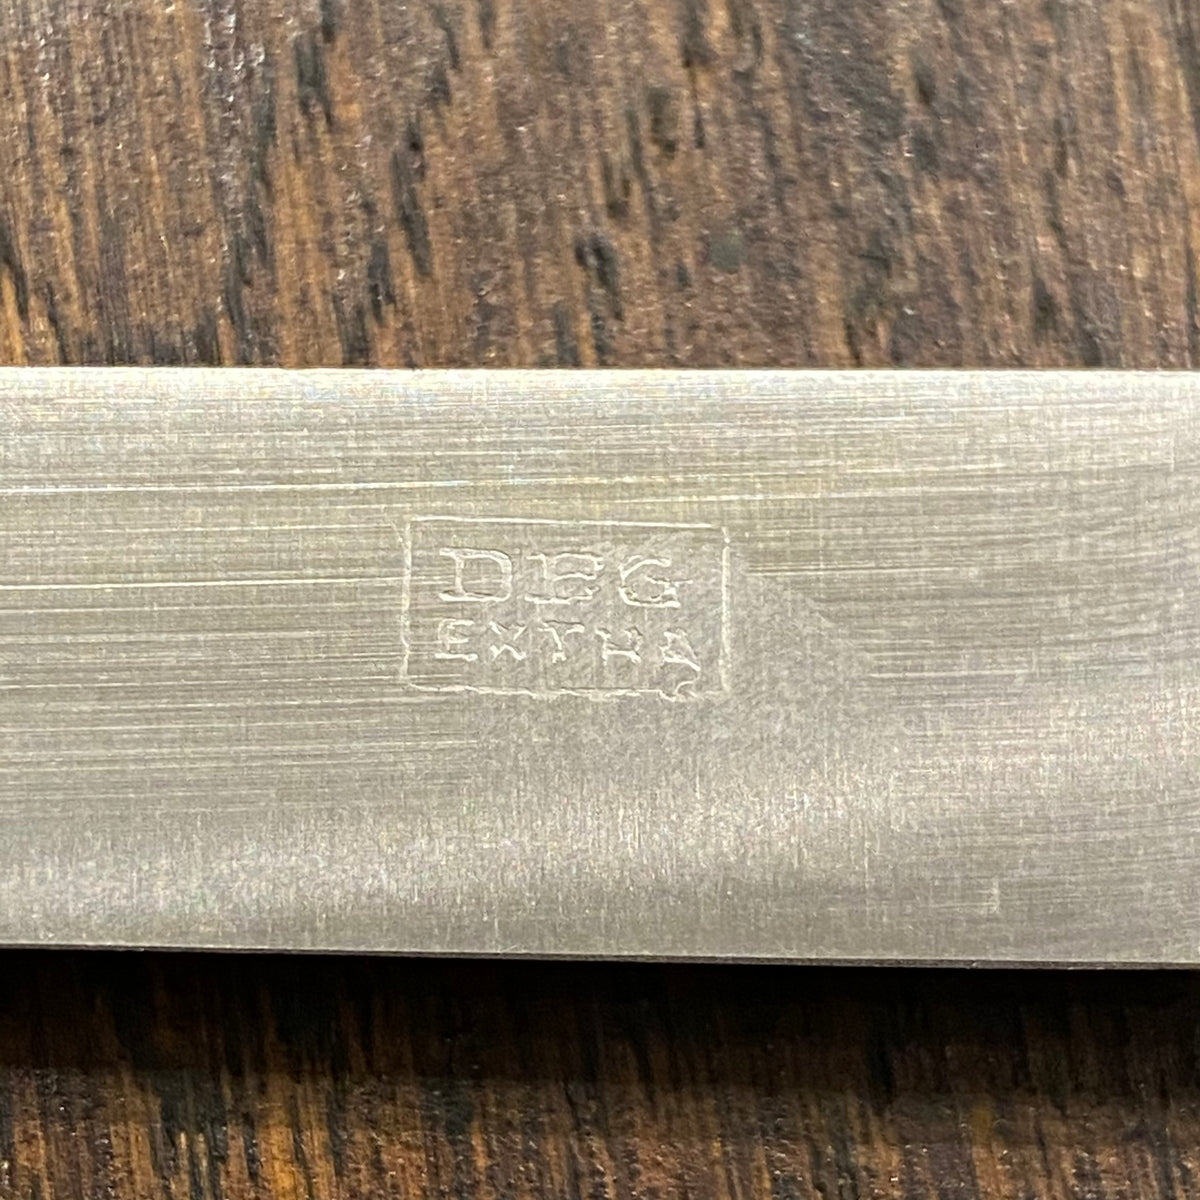 Deglon 2.75” Paring Knife Carbon Steel New Old Stock / Unused Vintage